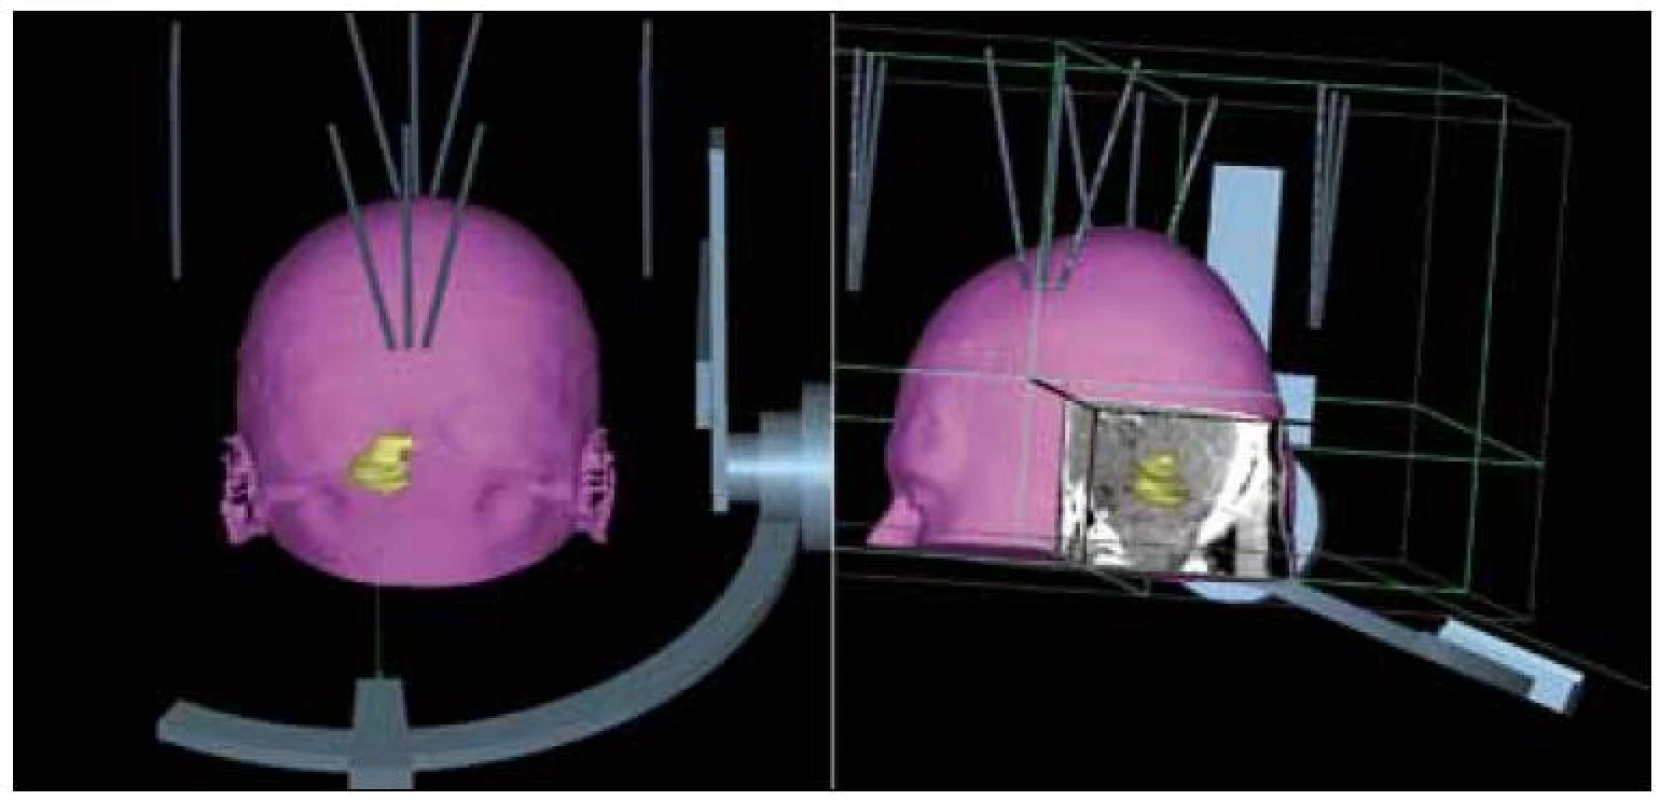 3D rekonstrukce transcerebellárního přístupu s obrácenou montáží stereotaktického rámu.